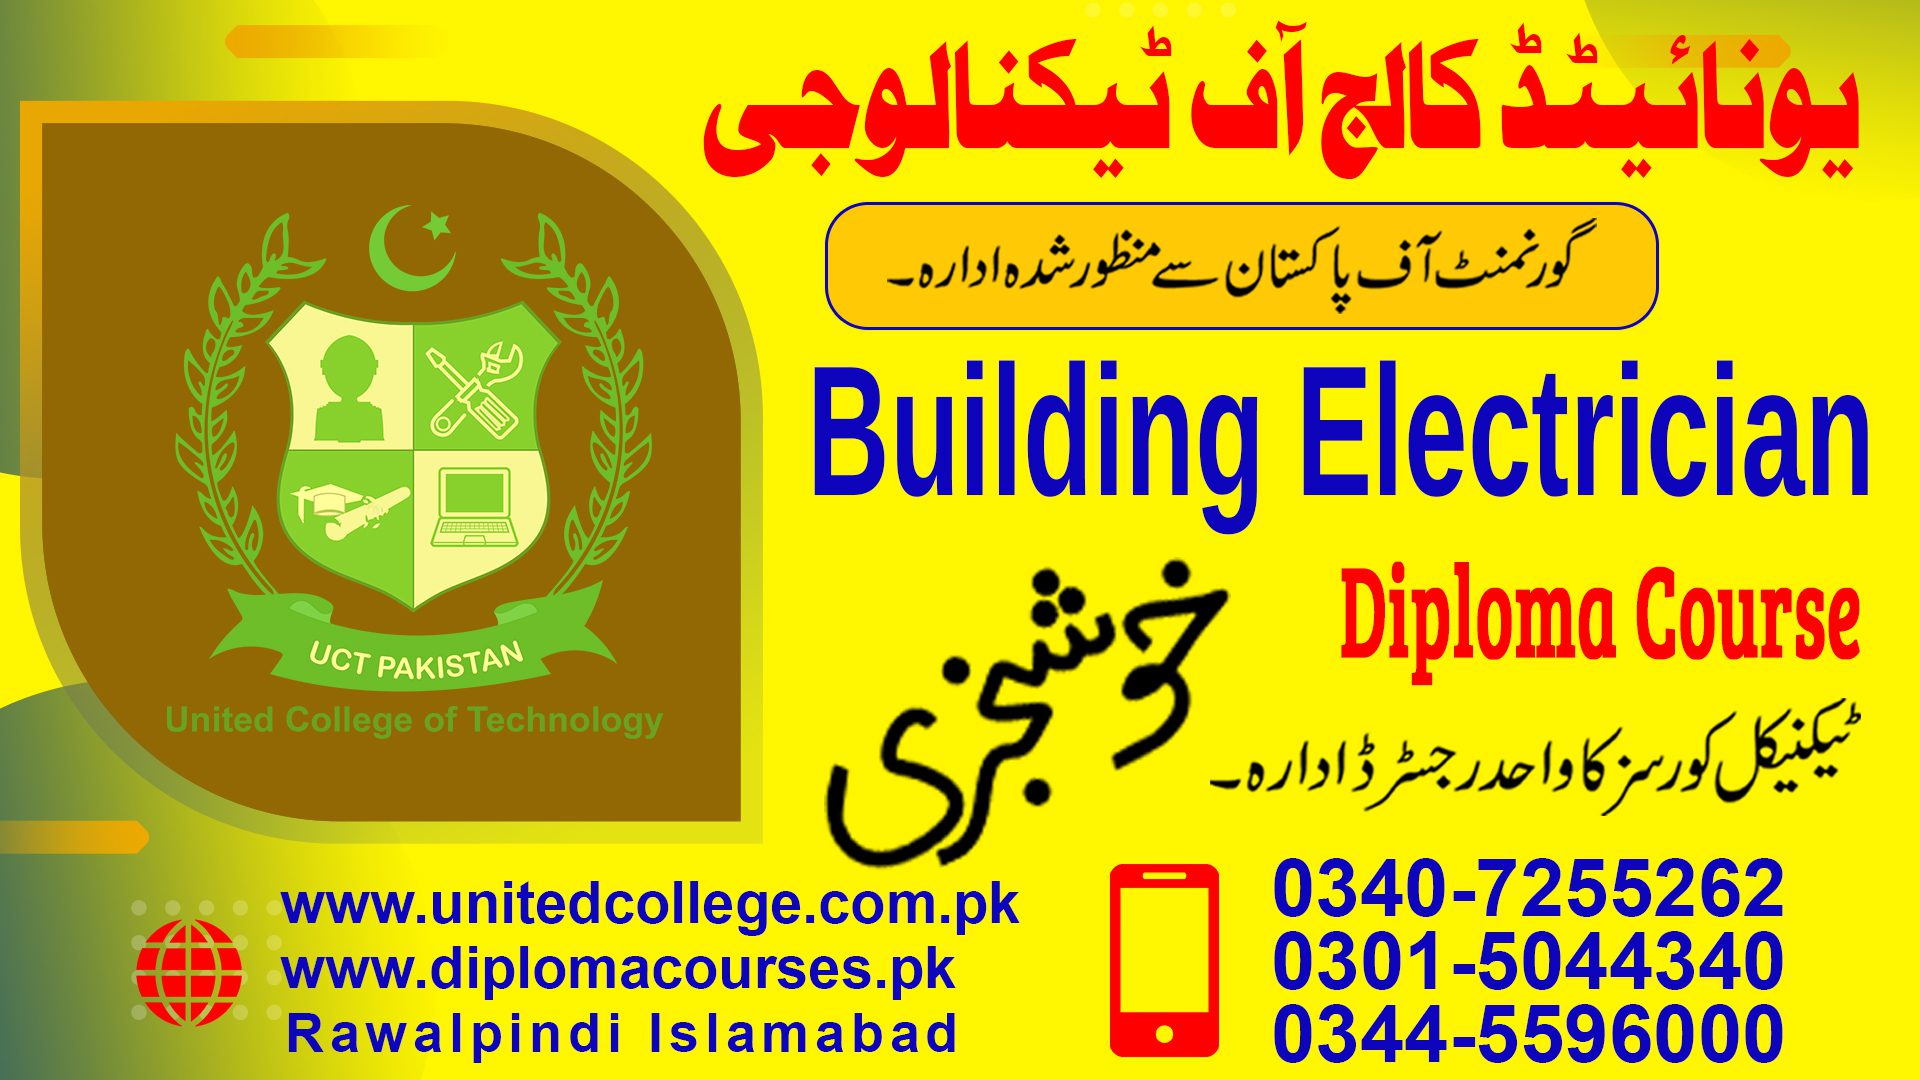 BUILDING ELECTRICIAN COURSE IN RAWALPINDI ISLAMABAD PAKISTAN